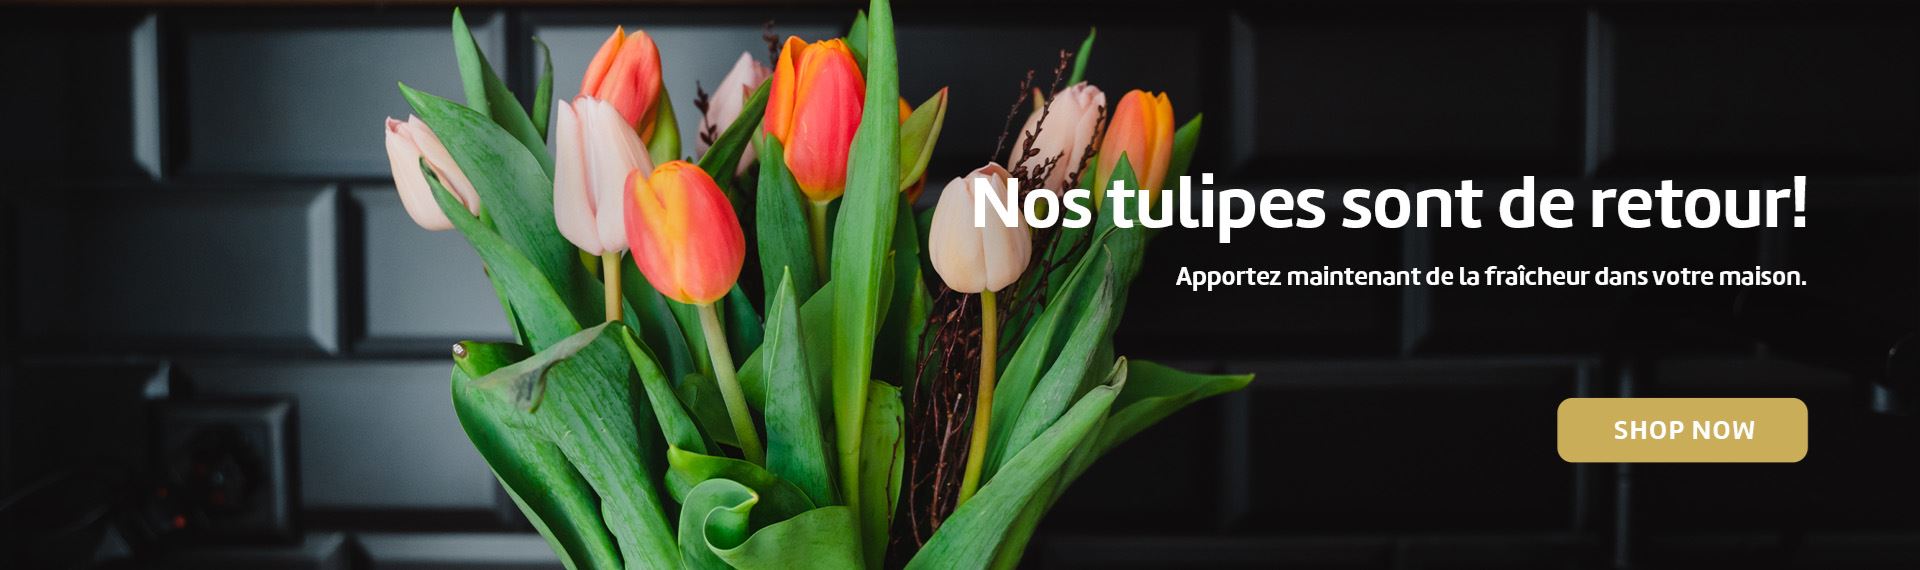 Nos tulipes sont de retour! Apportez maintenant de la Fraicheur dans votre maison.